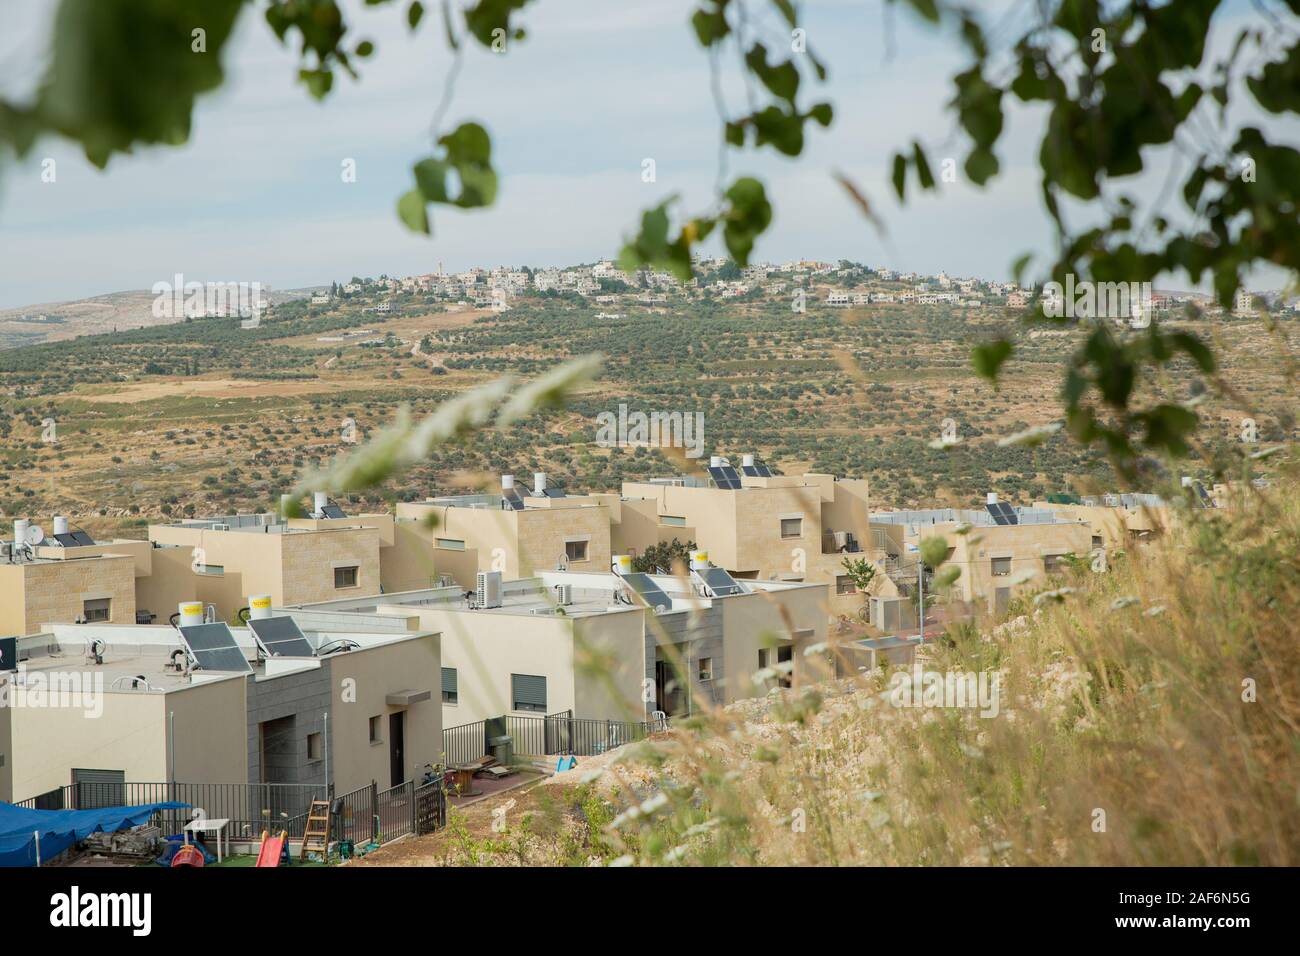 Anzeigen von Nablus aus dem kdumim Israelische Siedlung im Westjordanland, Israel/Palästina Stockfoto